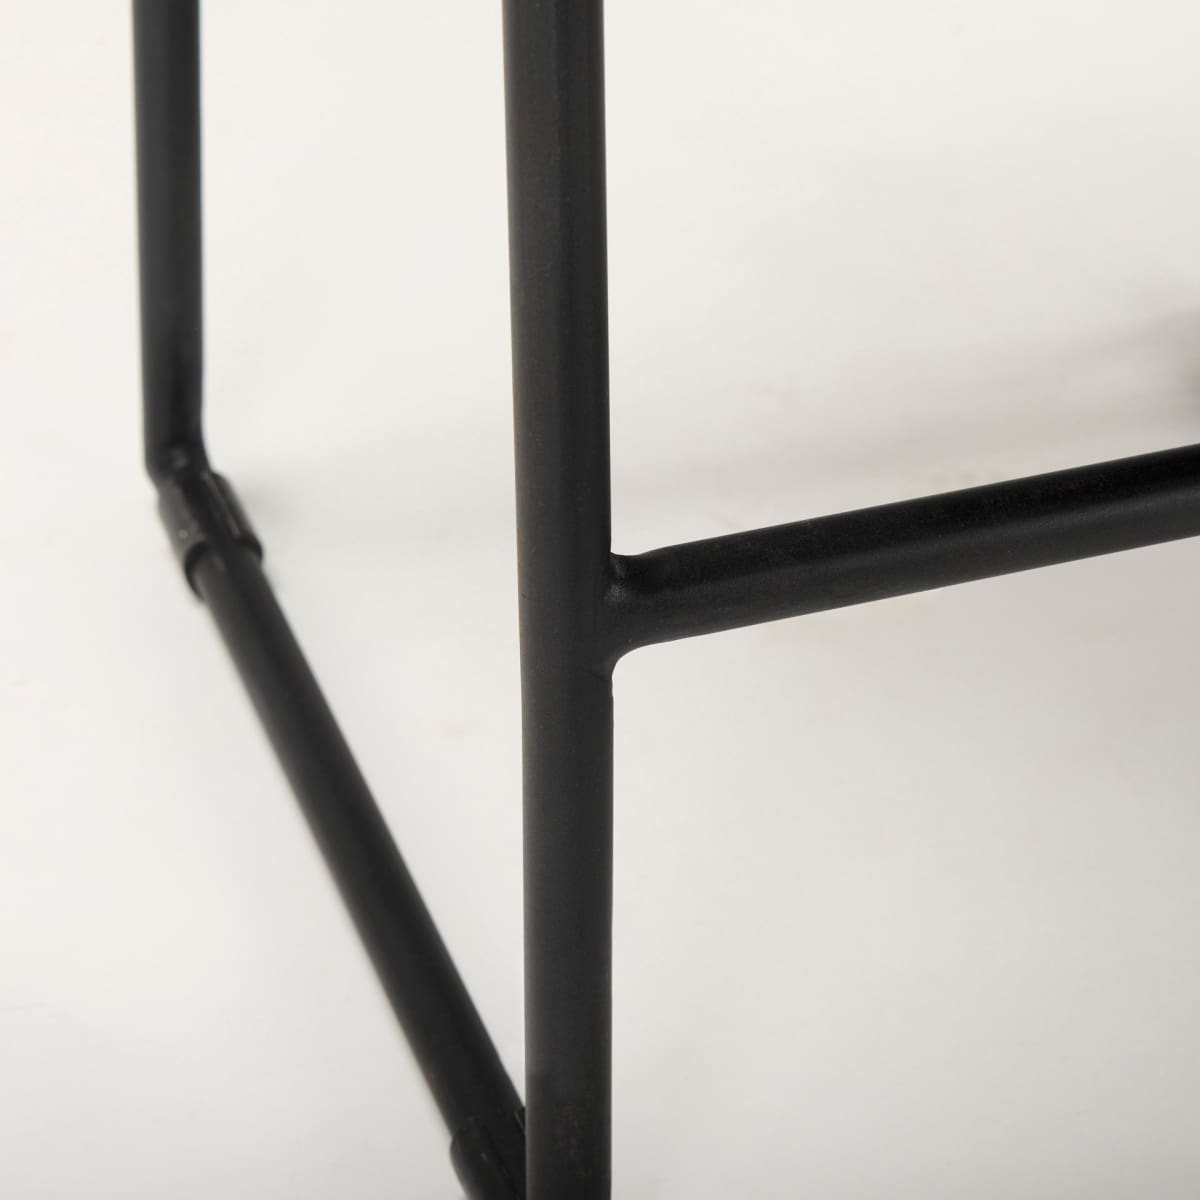 Givens Bar Counter Stool Black Wood | Black Metal | Counter - bar-stools